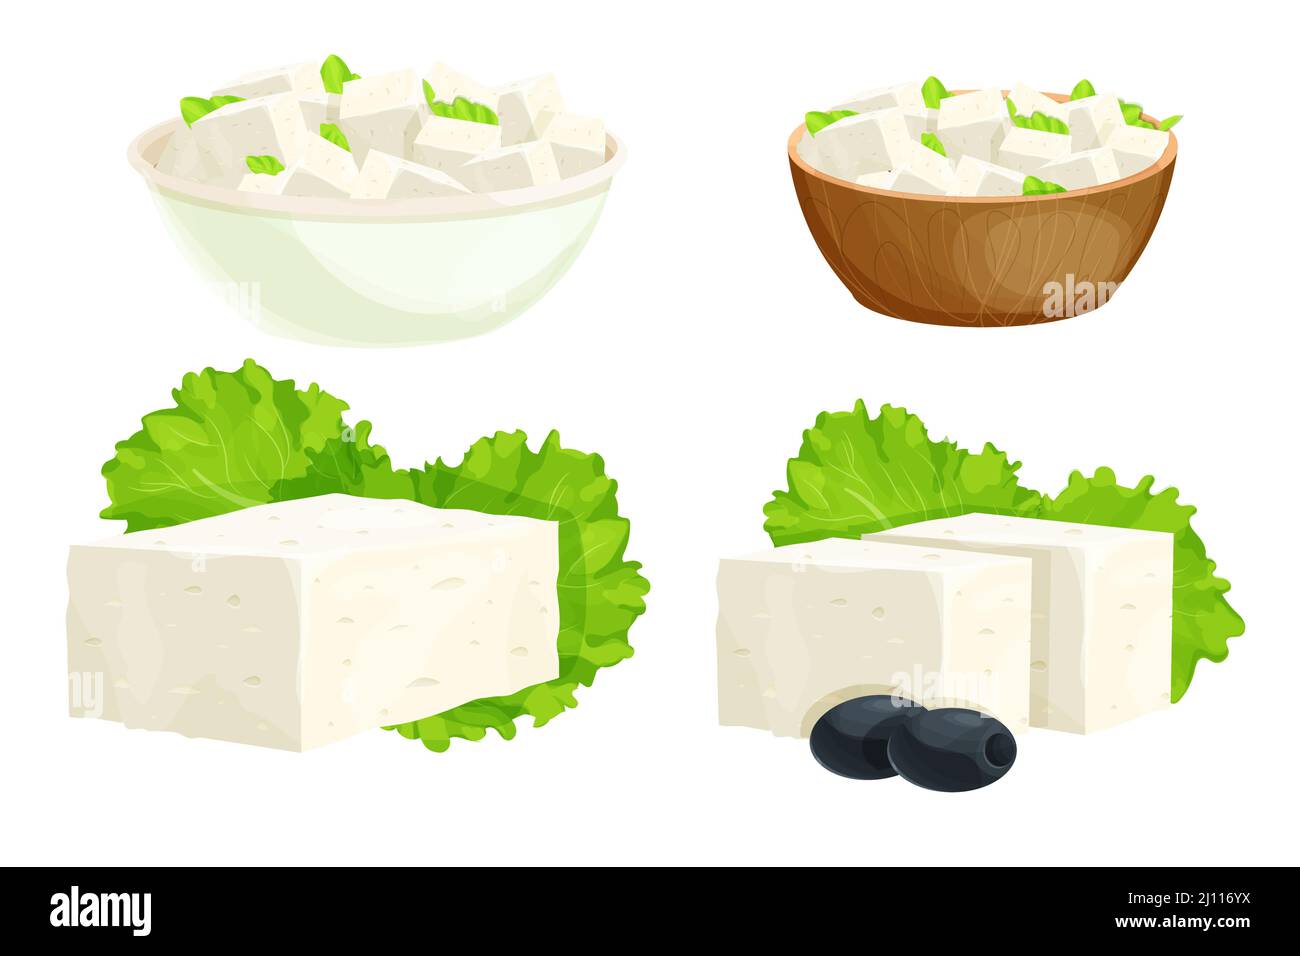 Piezas de queso feta en tazón de fuente en estilo de dibujos animados  ingrediente detallado aislado sobre fondo blanco. Queso blanco rizado  griego hecho de leche de oveja o de frijol lechero. .